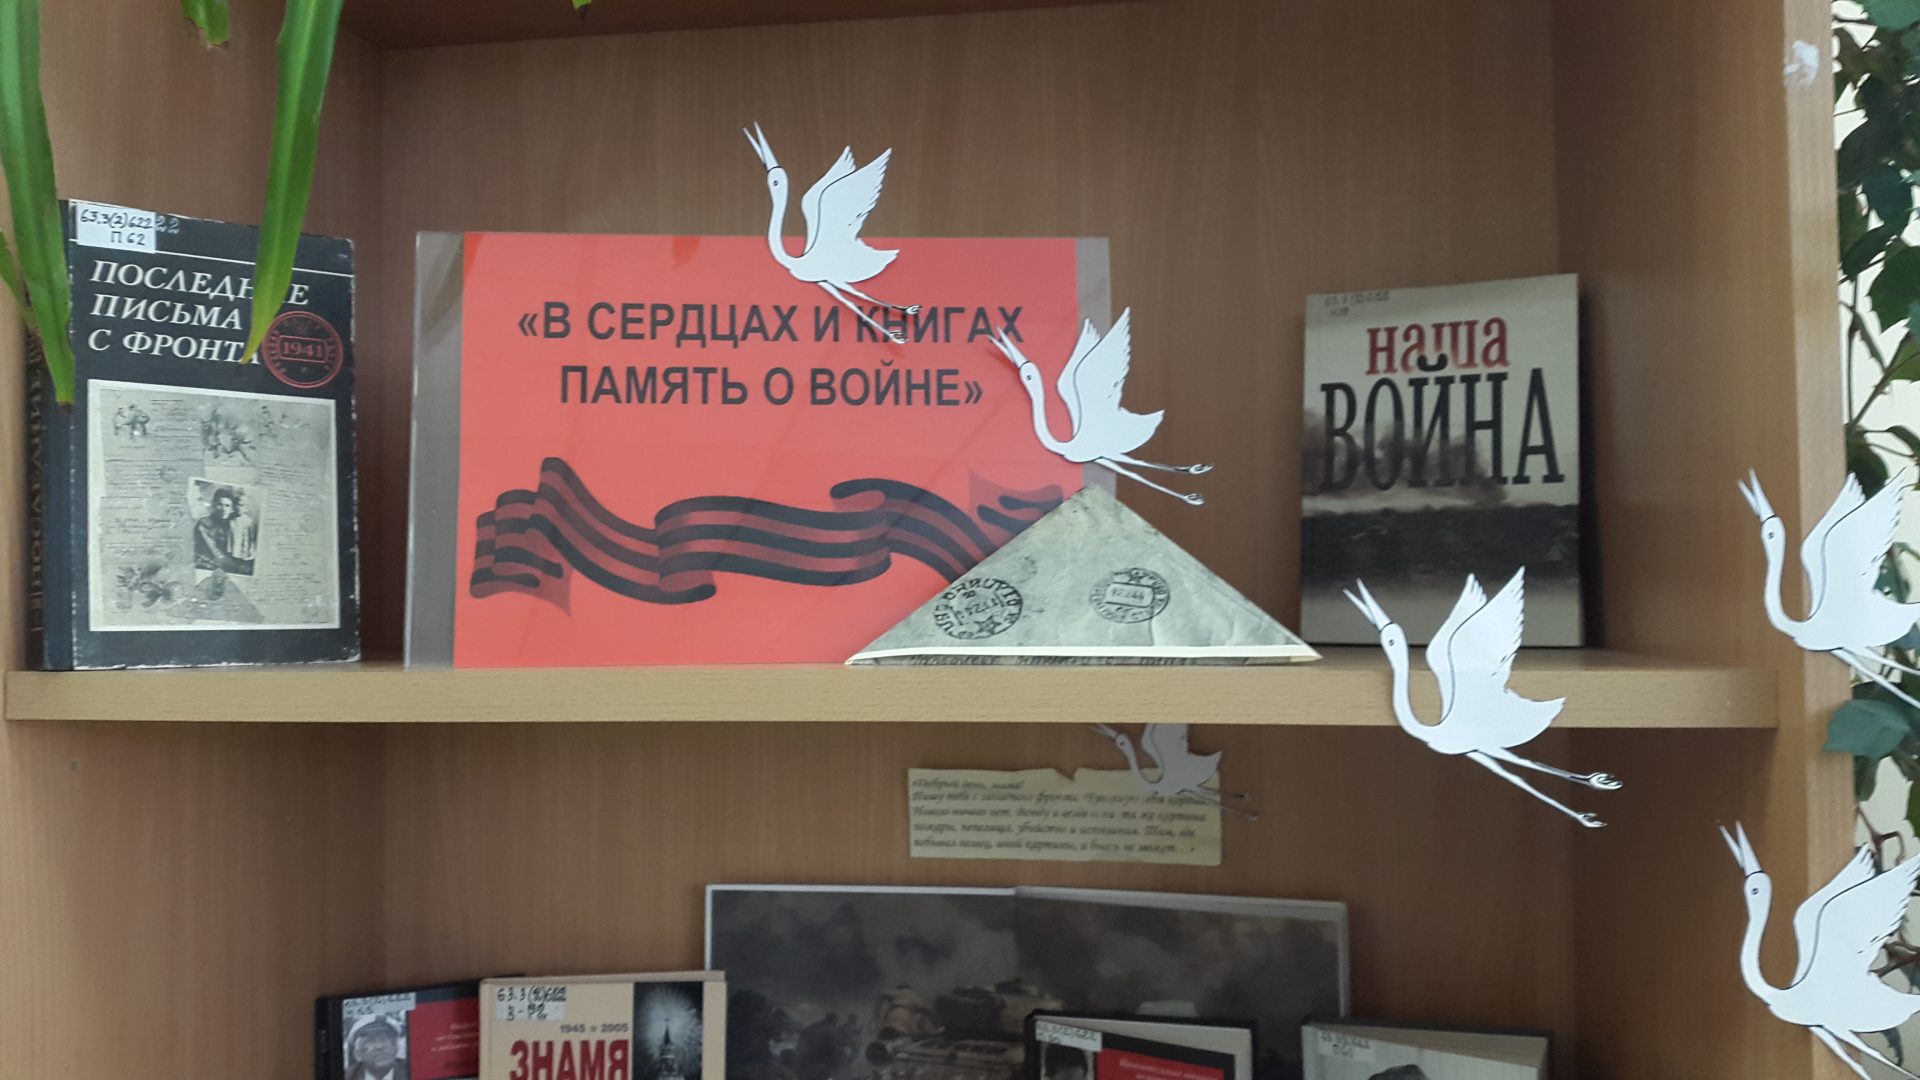 Заголовок выставки о Великой Отечественной войне